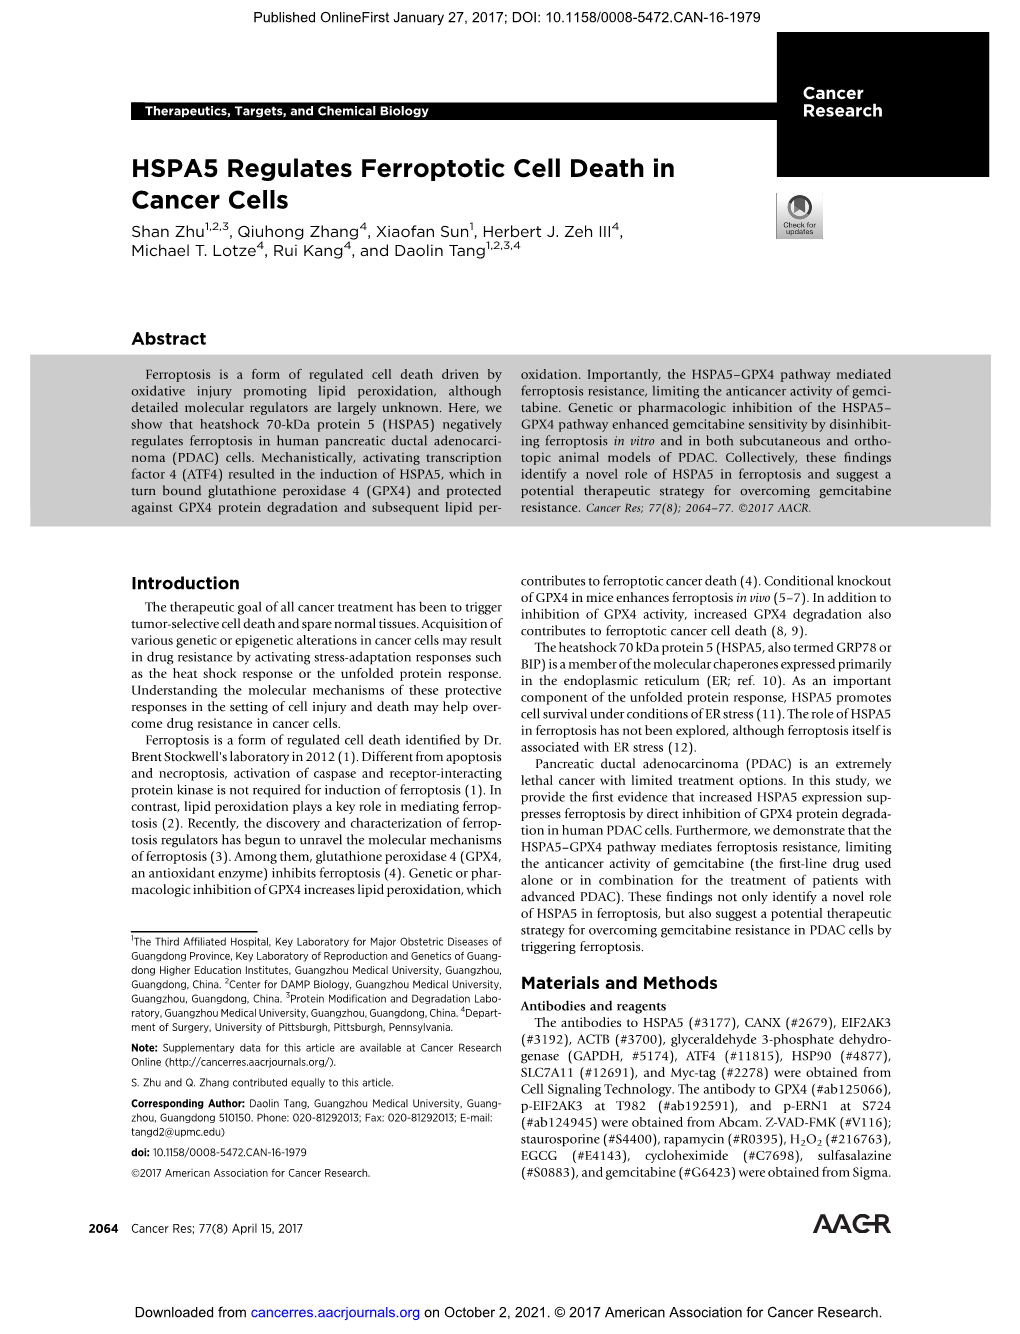 HSPA5 Regulates Ferroptotic Cell Death in Cancer Cells Shan Zhu1,2,3, Qiuhong Zhang4, Xiaofan Sun1, Herbert J